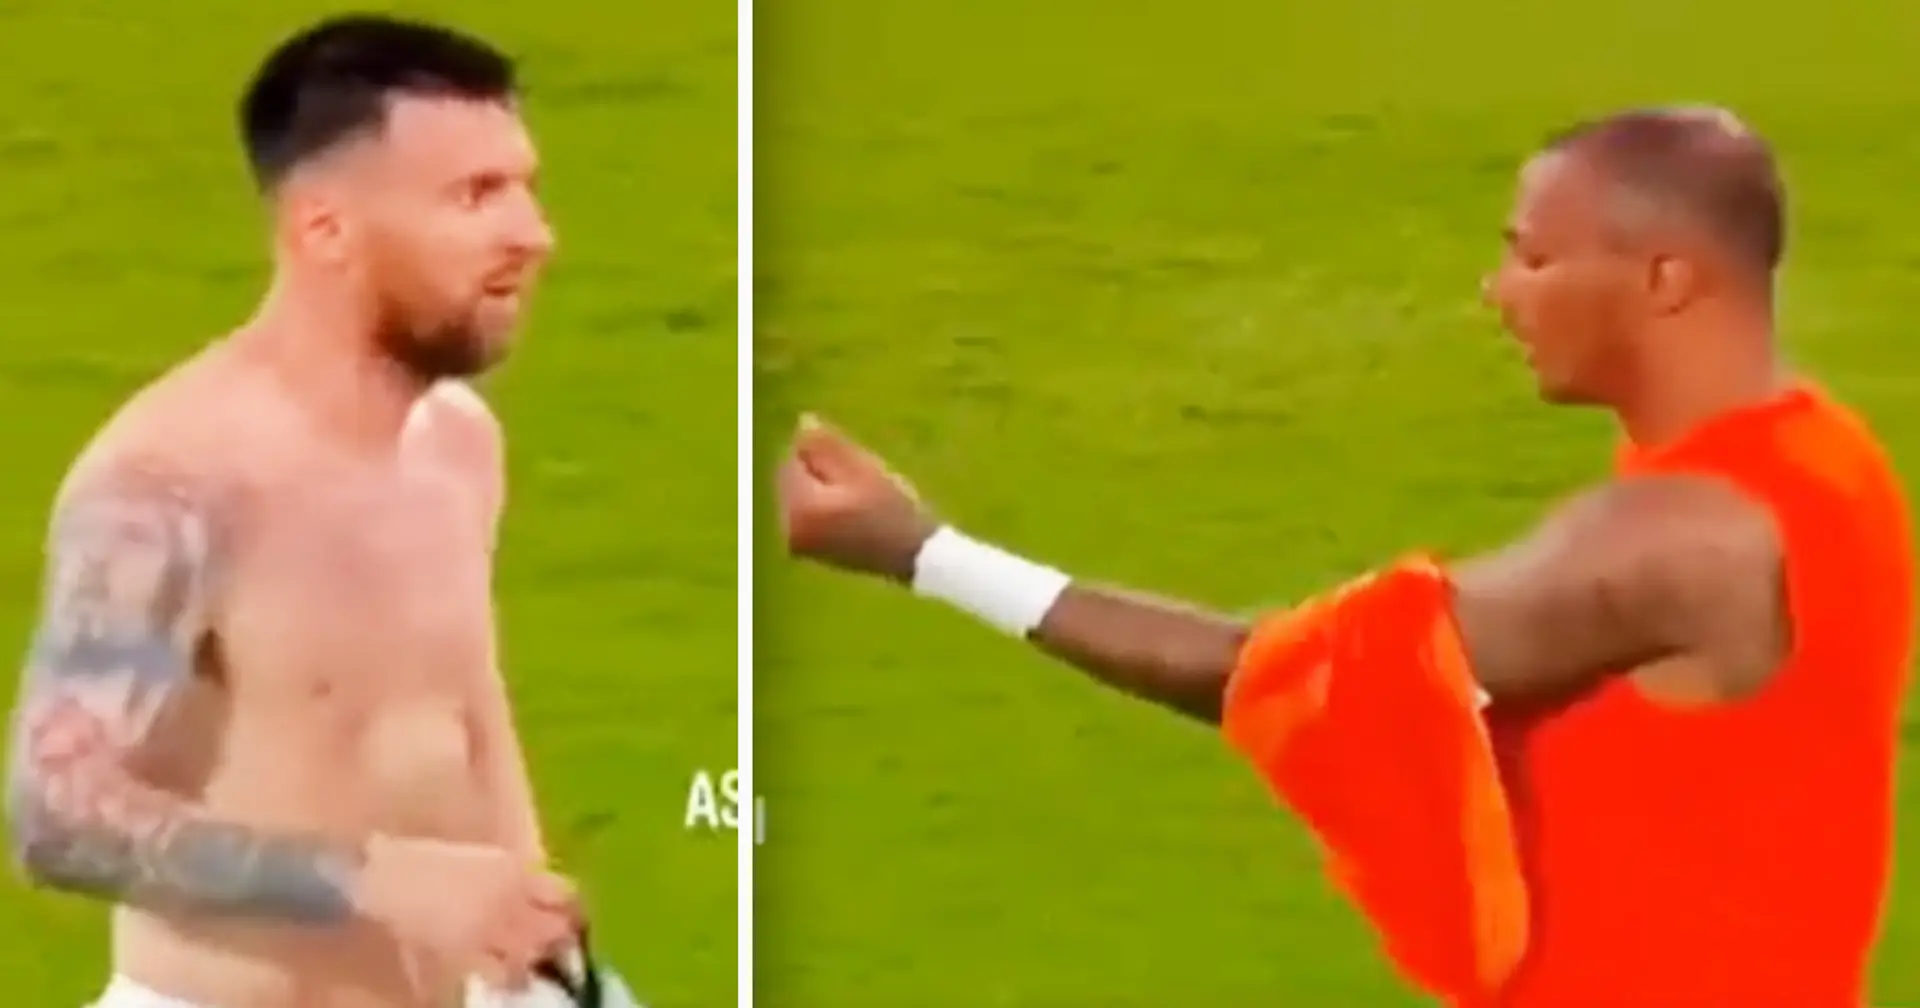 Gesichtet: Torwart fragt nach Messis Trikot, nachdem Leo einen Hattrick gegen ihn erzielt hatte - Argentinien gewinnt mit 7:0